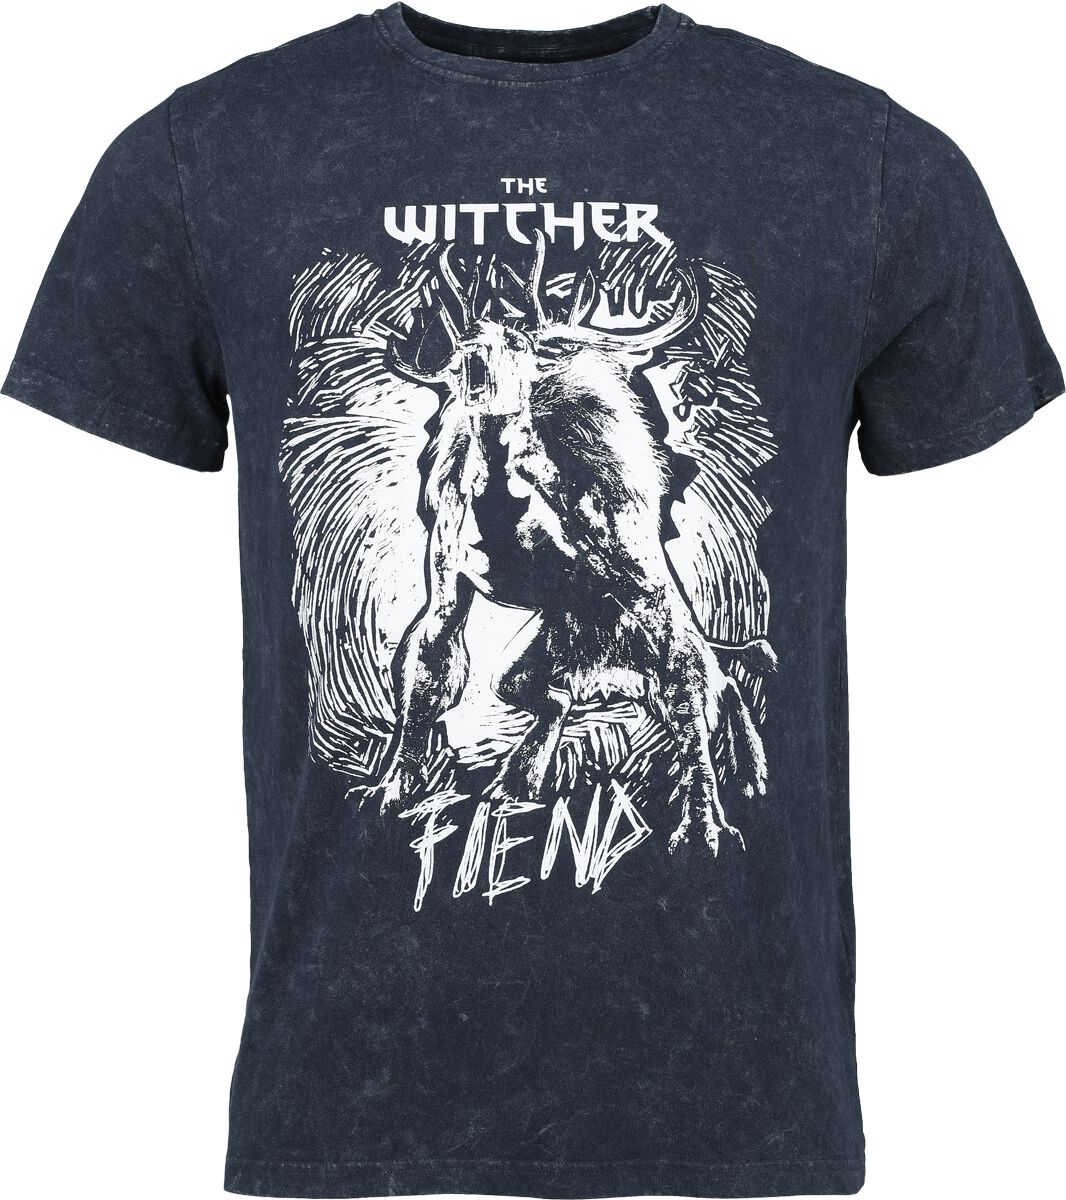 The Witcher Fiend T-Shirt blau in L